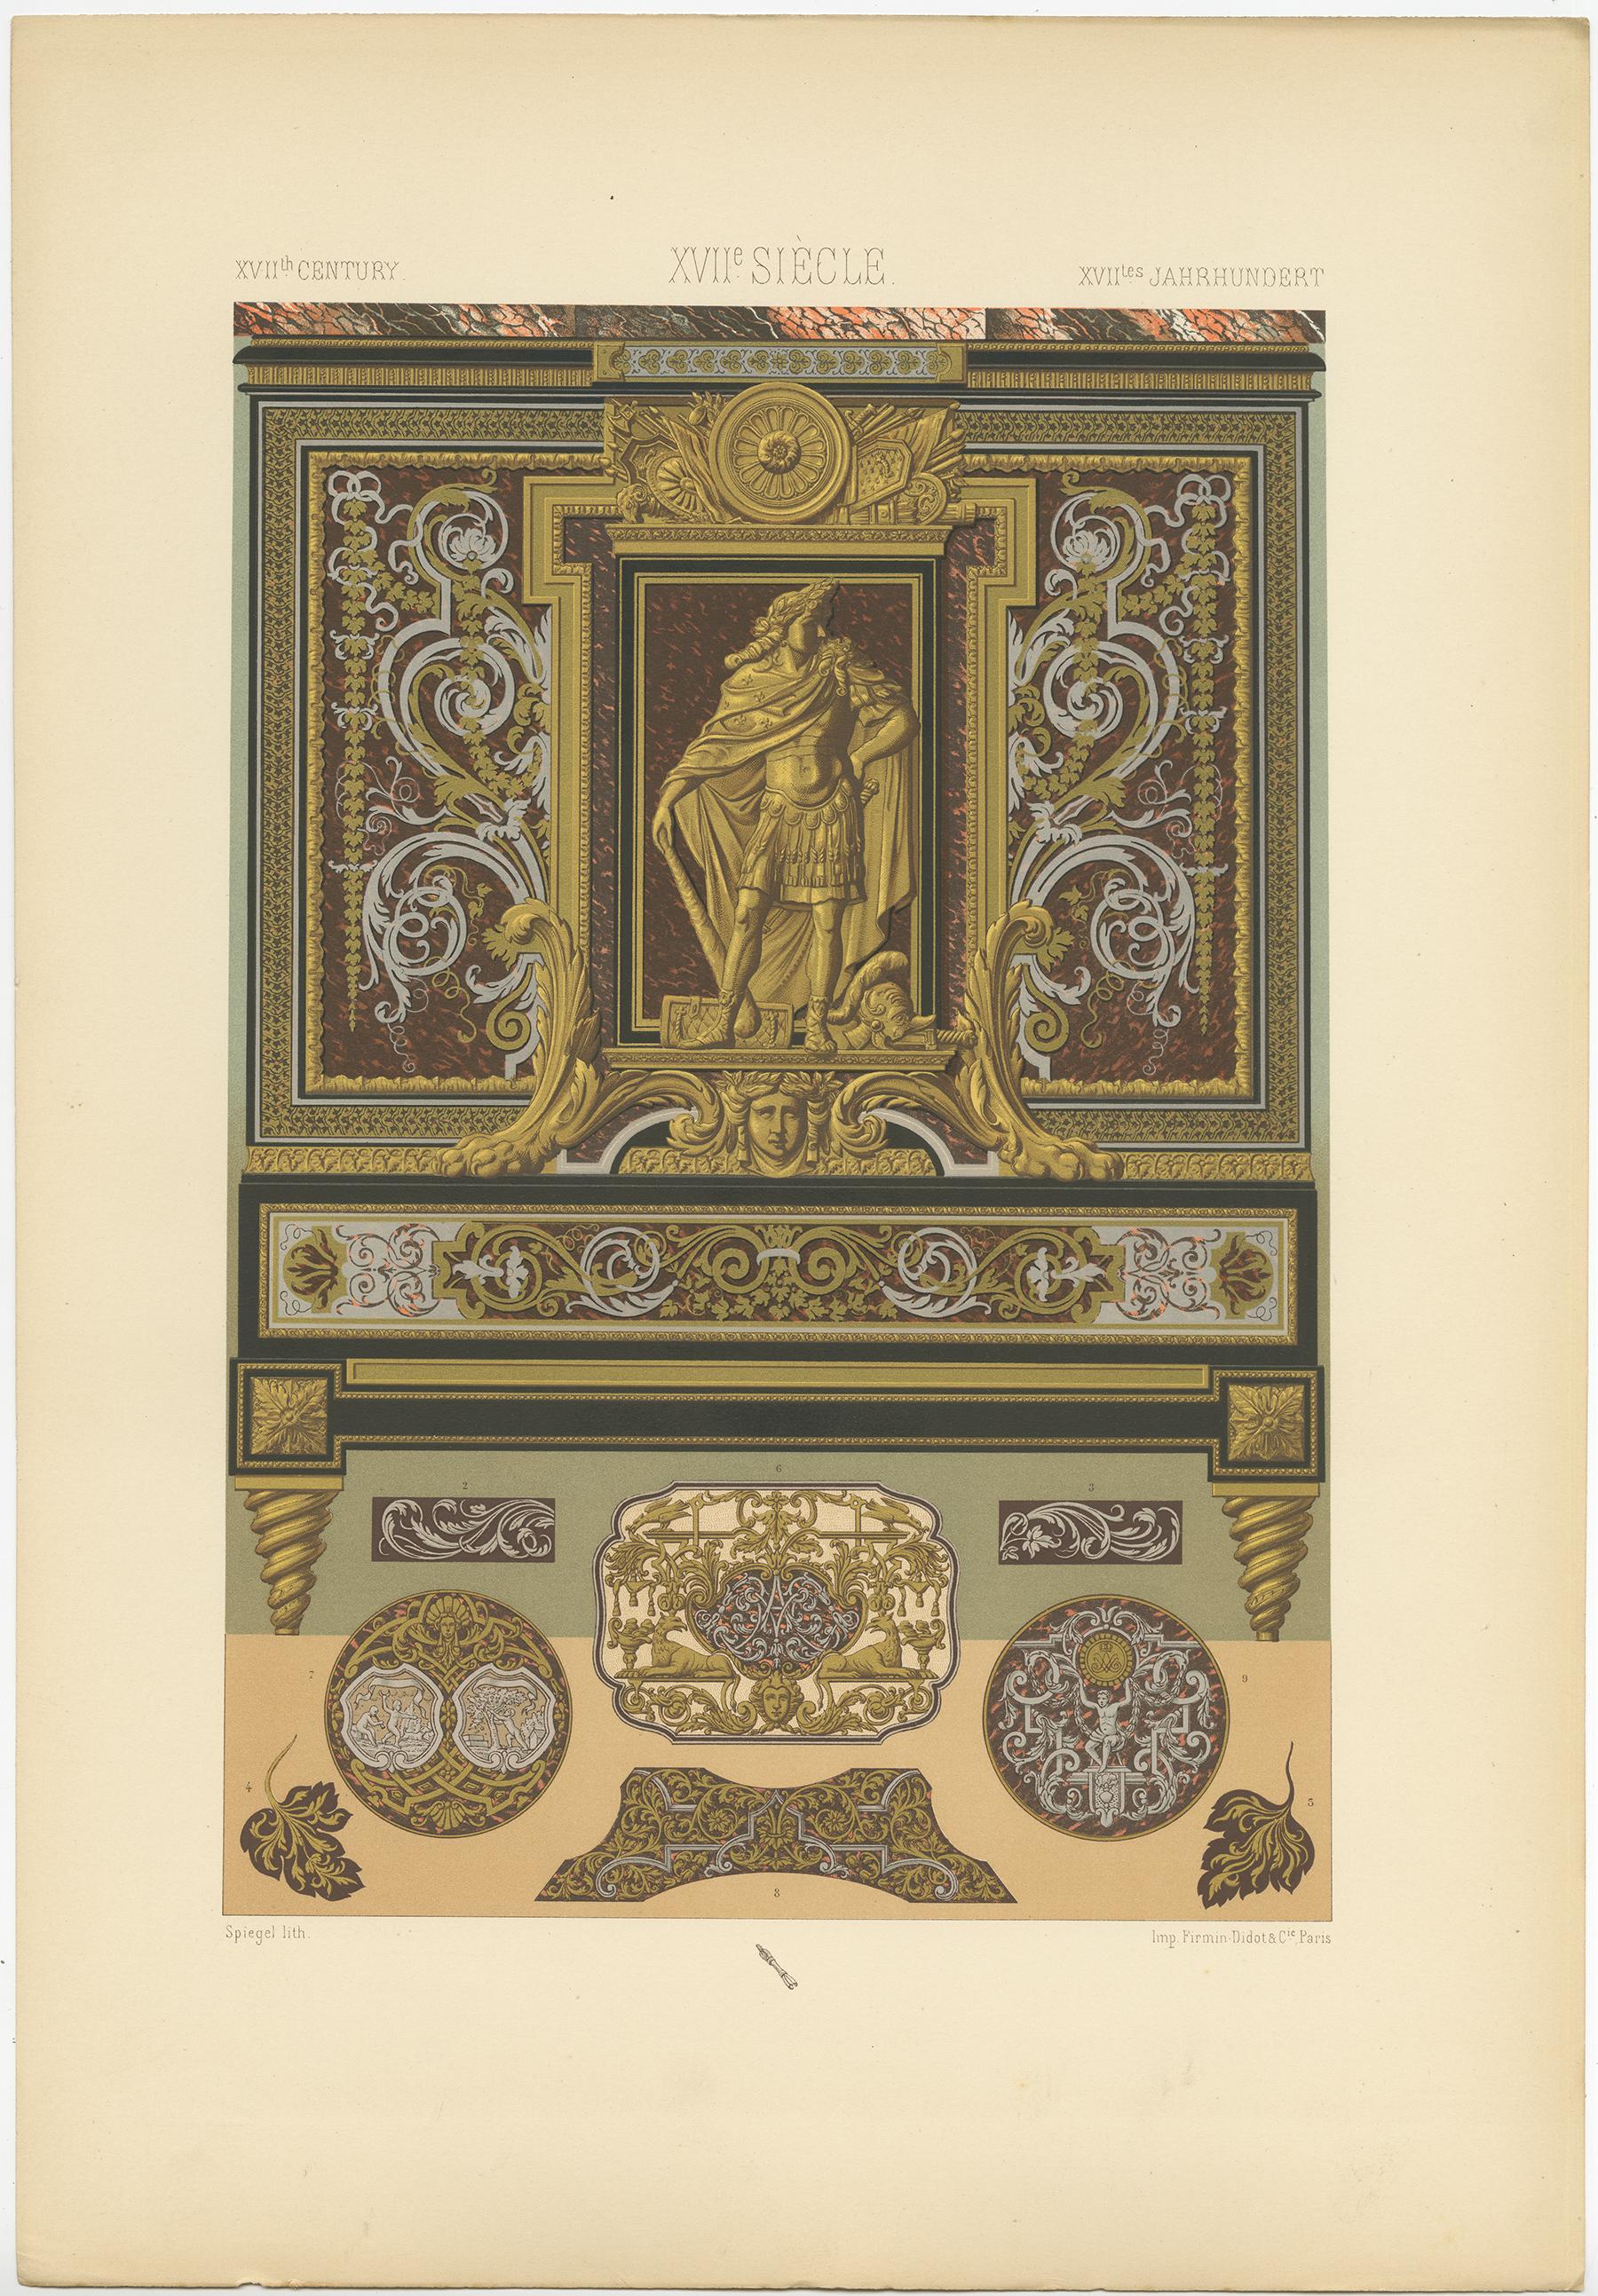 Gravure ancienne intitulée '17th Century - XVIIc Siècle - XVIILes Jahrhundert'. Chromolithographie d'une incrustation métallique provenant de meubles, ornements de France. Cette estampe est tirée de 